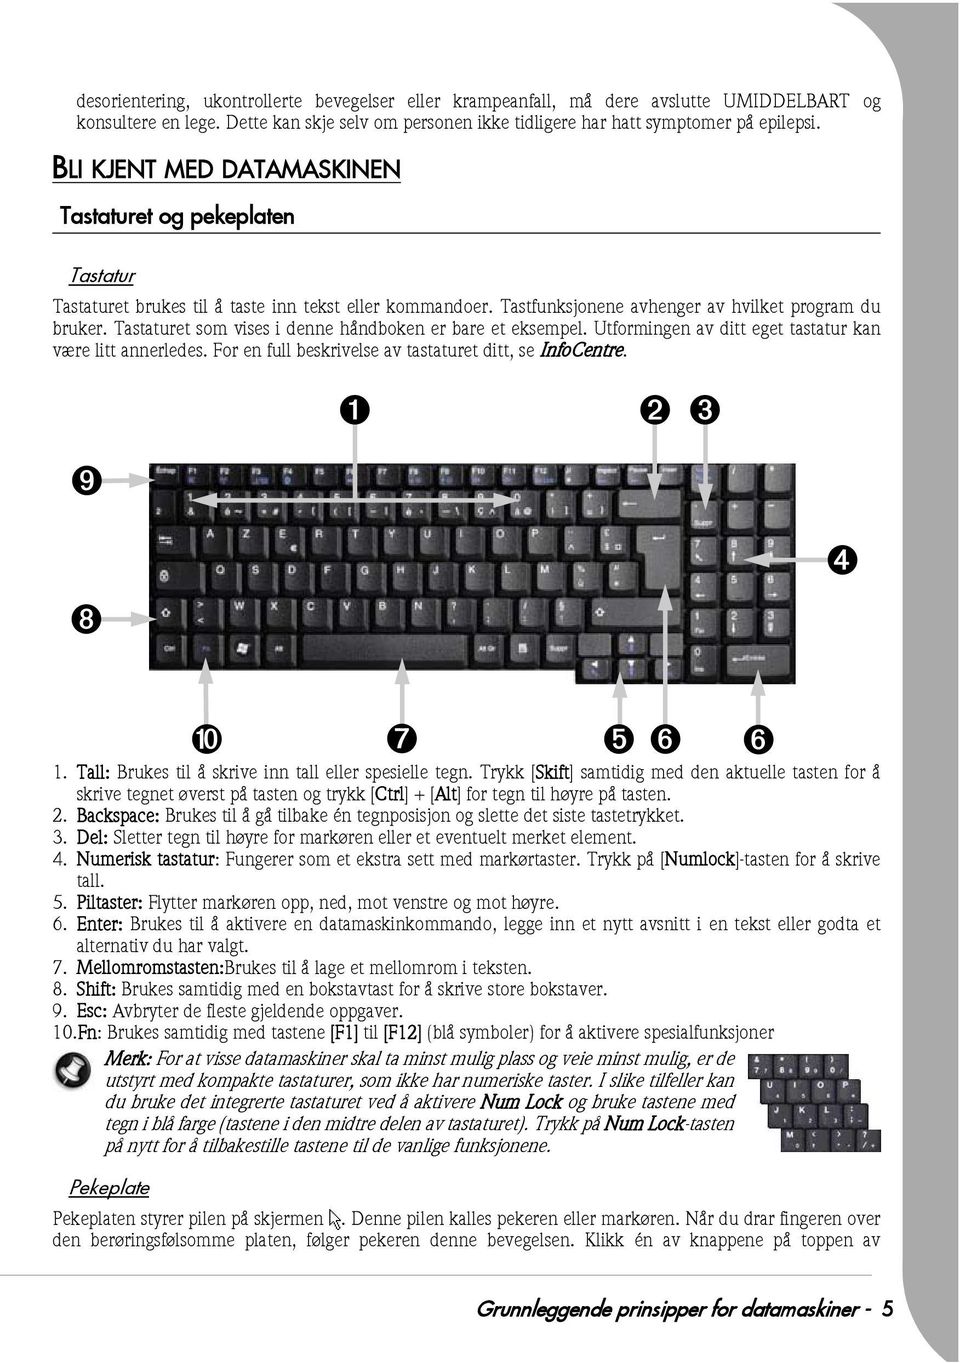 Tastaturet som vises i denne håndboken er bare et eksempel. Utformingen av ditt eget tastatur kan være litt annerledes. For en full beskrivelse av tastaturet ditt, se InfoCentre.